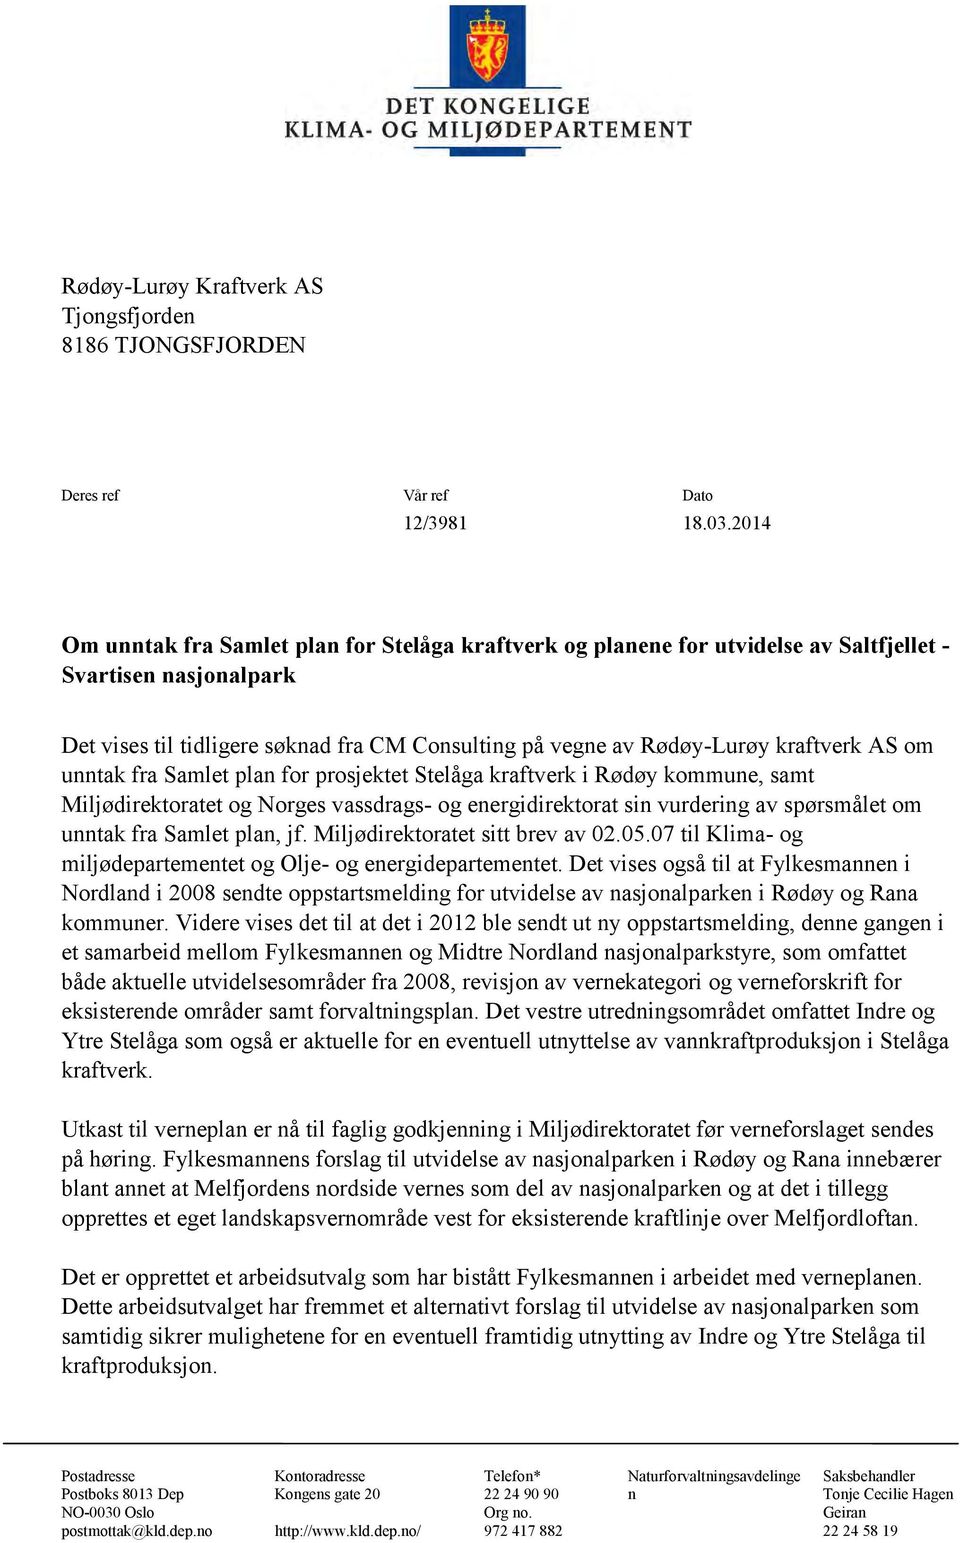 kraftverk AS om unntak fra Samlet plan for prosjektet Stelåga kraftverk i Rødøy kommune, samt Miljødirektoratet og Norges vassdrags- og energidirektorat sin vurdering av spørsmålet om unntak fra